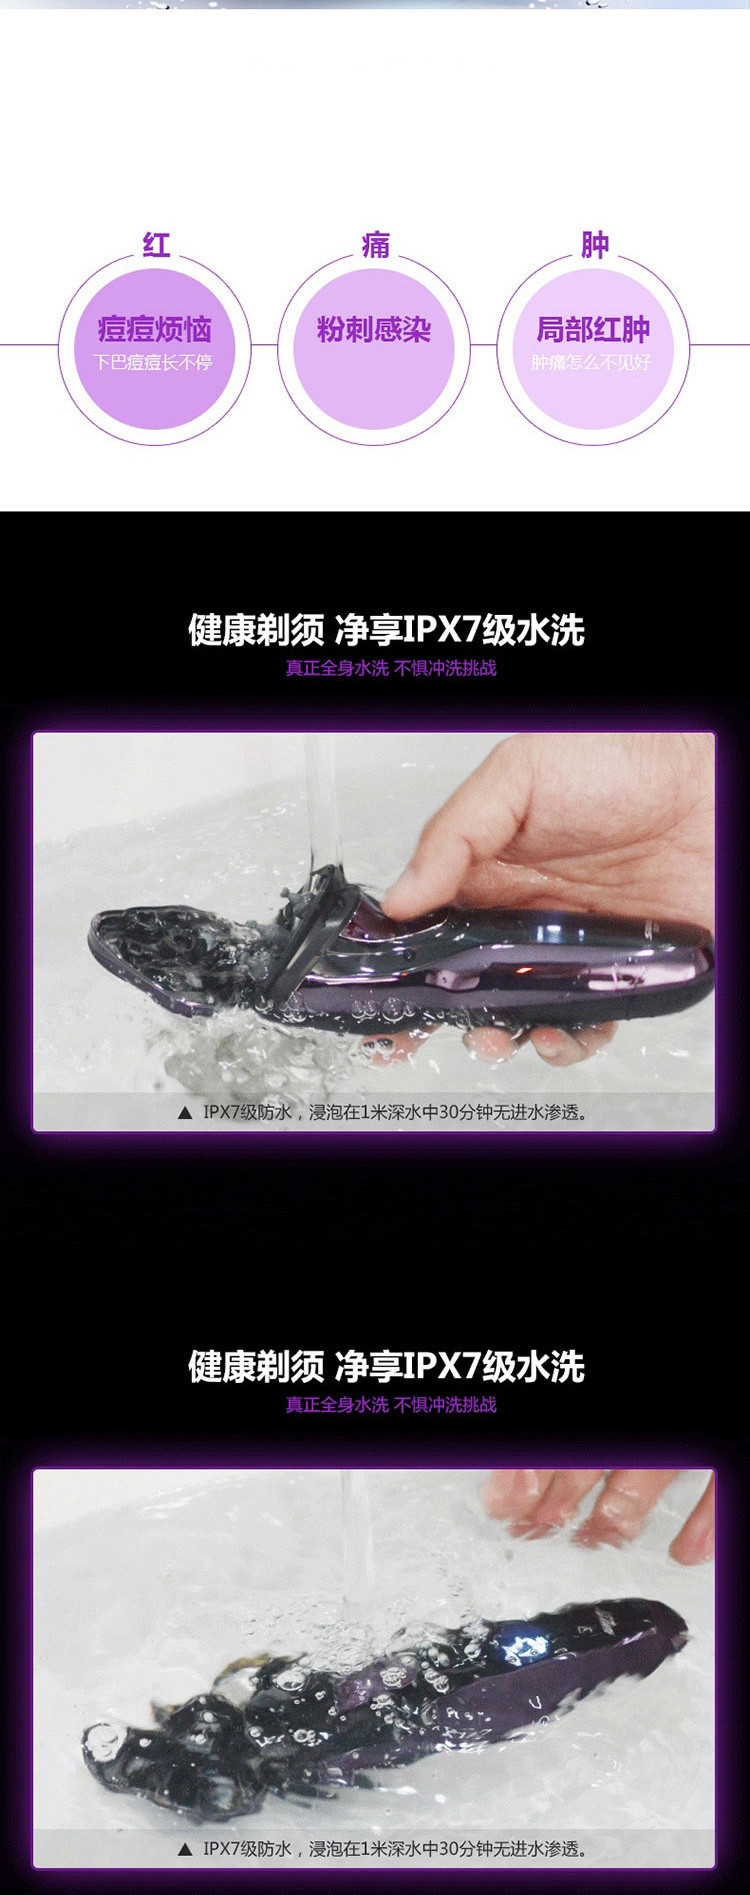 超人 剃须刀 RS337 紫色 全身水洗数码显示1小时快充60分钟续航